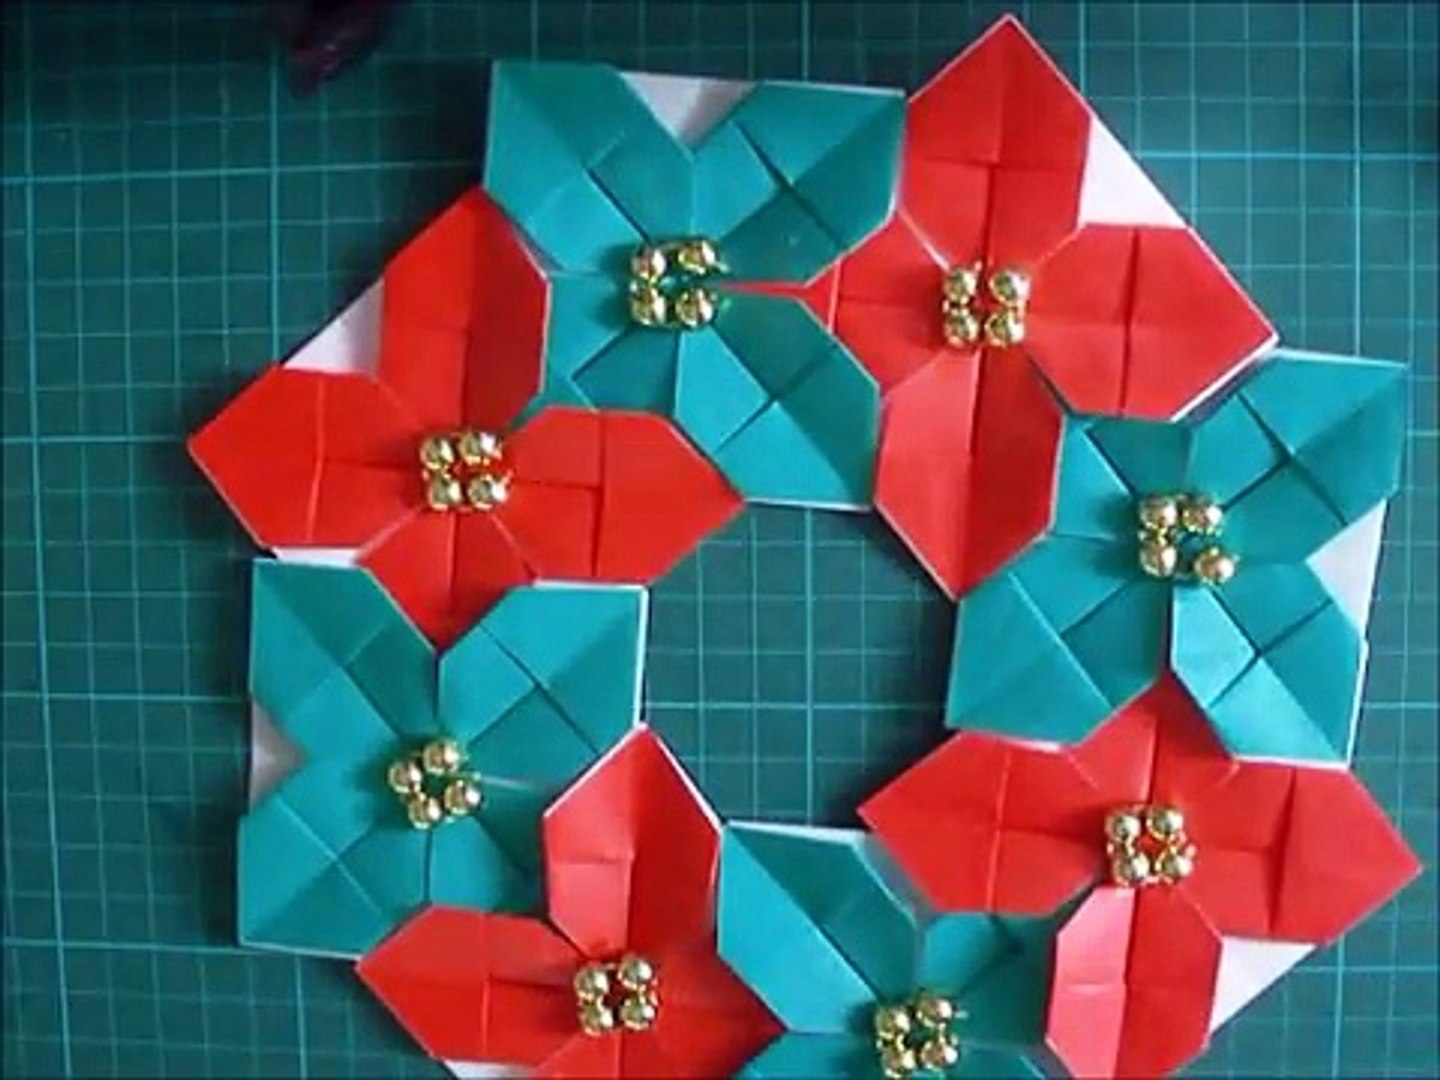 折り紙 クリスマスリース ポインセチア２の簡単な折り方 Niceno1 Origami Christmas Wreath Poinsettia Tutorial Zfg0rr C1ci Video Dailymotion